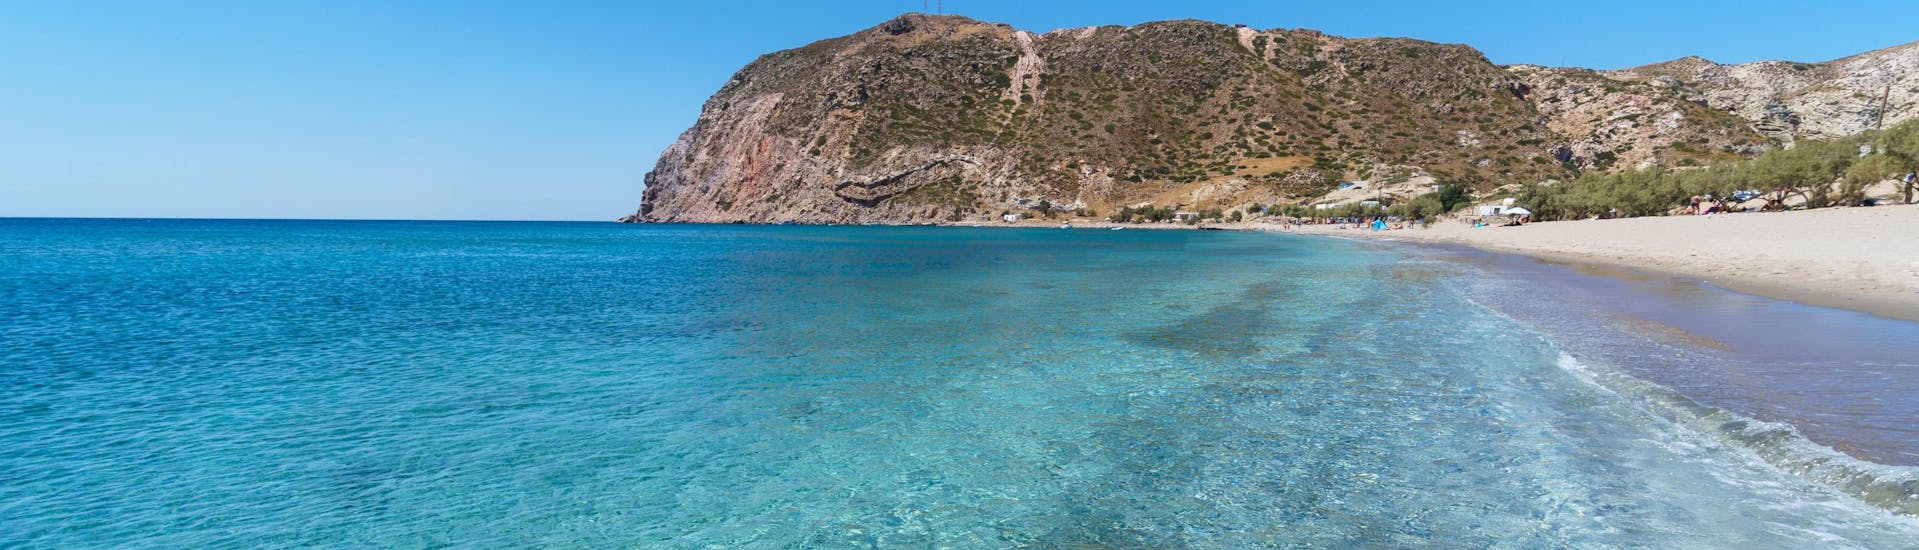 Blick auf den Strand von Agia Kiriaki, ein wunderbarer Ort für eine Bootstour auf Milos.